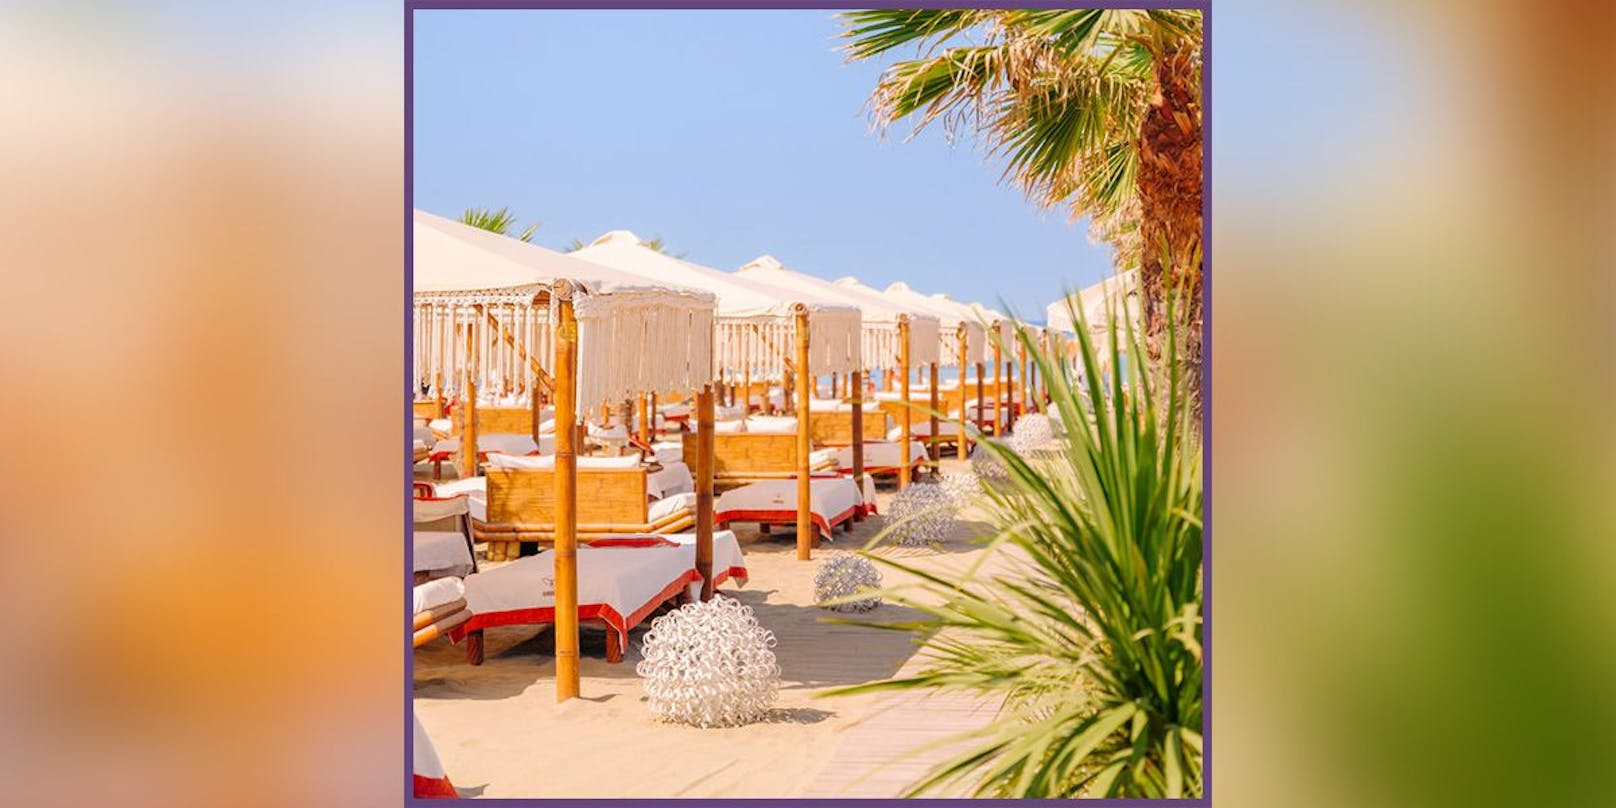 Im Twiga Beach Club (Bild) kann man die Sonne in 4x4 Meter großen arabischen Zelten genießen – für 600 Euro pro Tag.